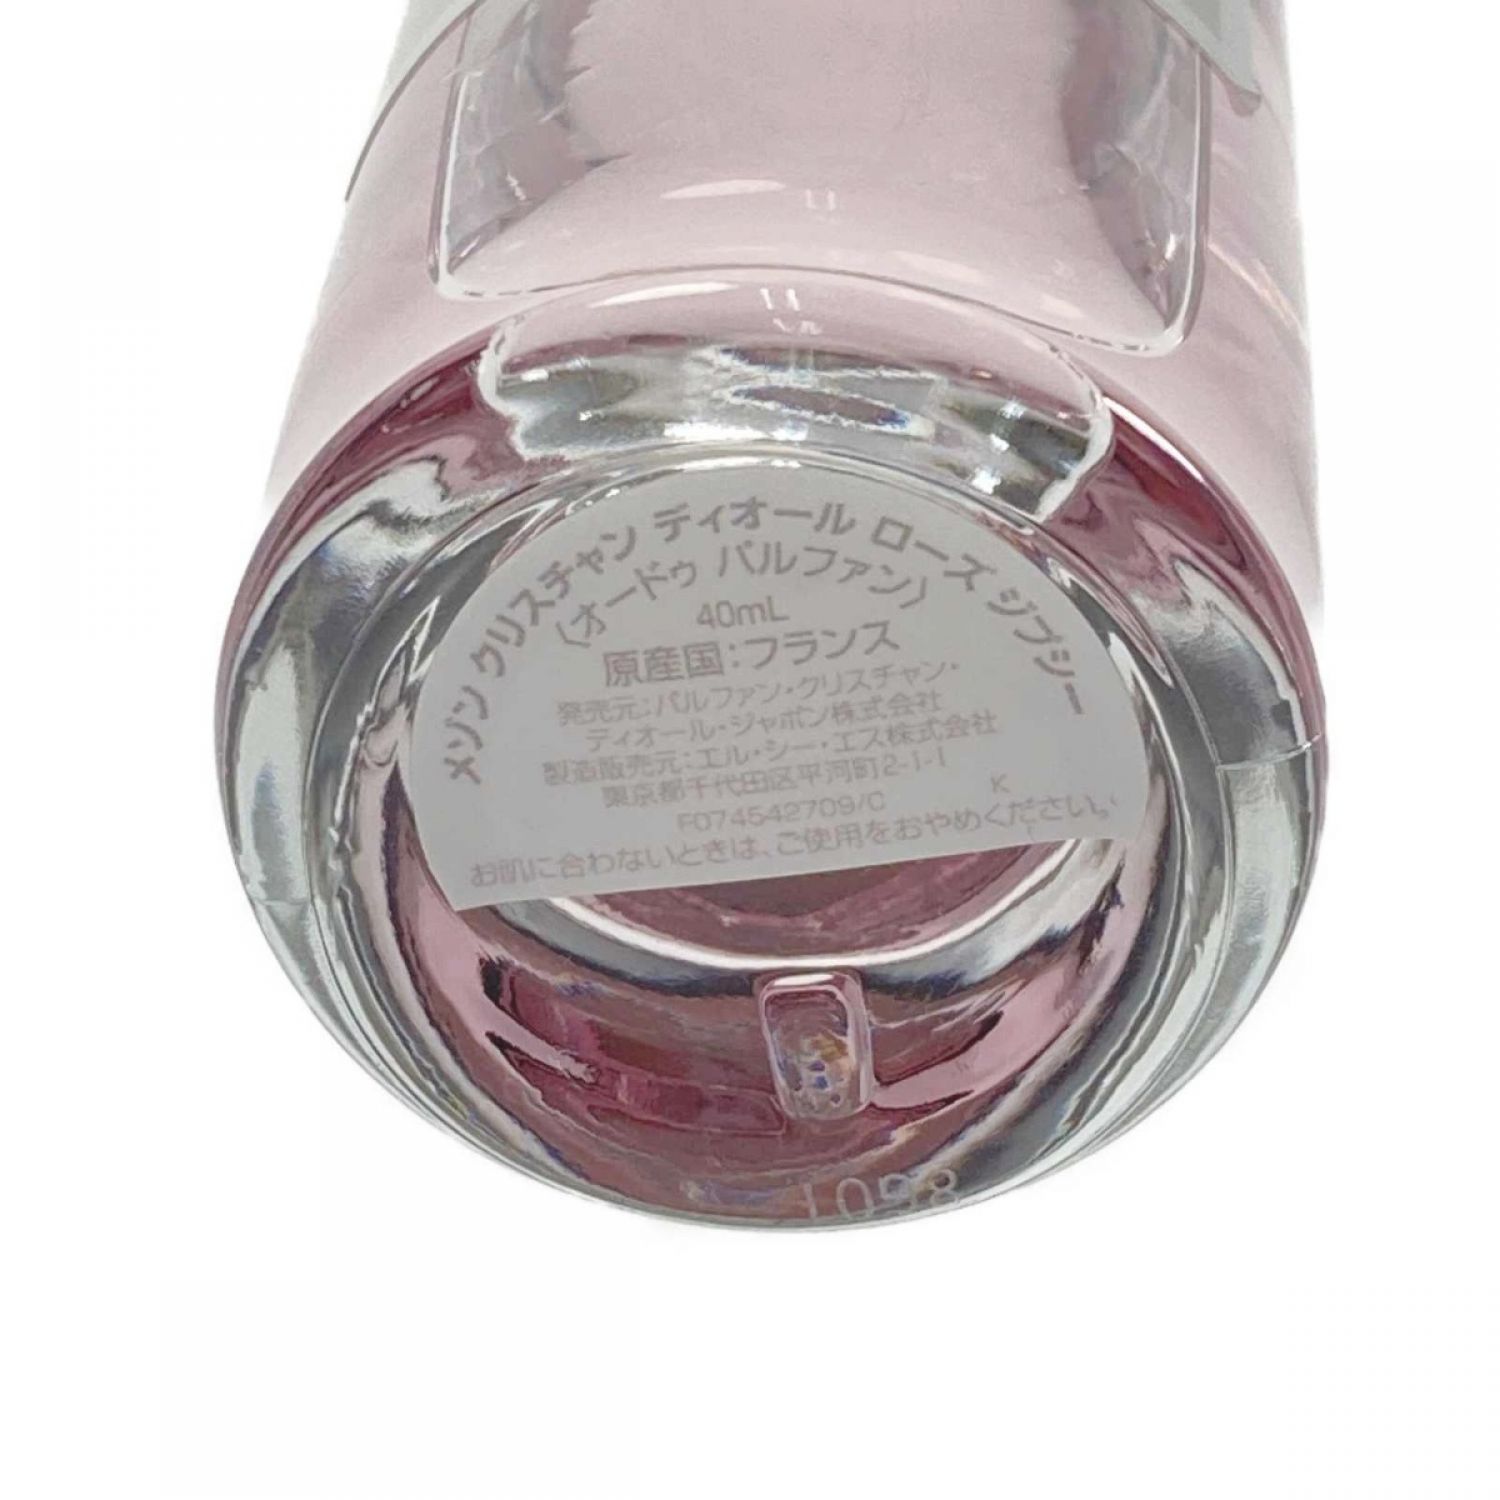 【中古】 Christian Dior クリスチャンディオール ローズ ジプシー オードゥ パルファン 40ml 香水 ROSE GIPSY